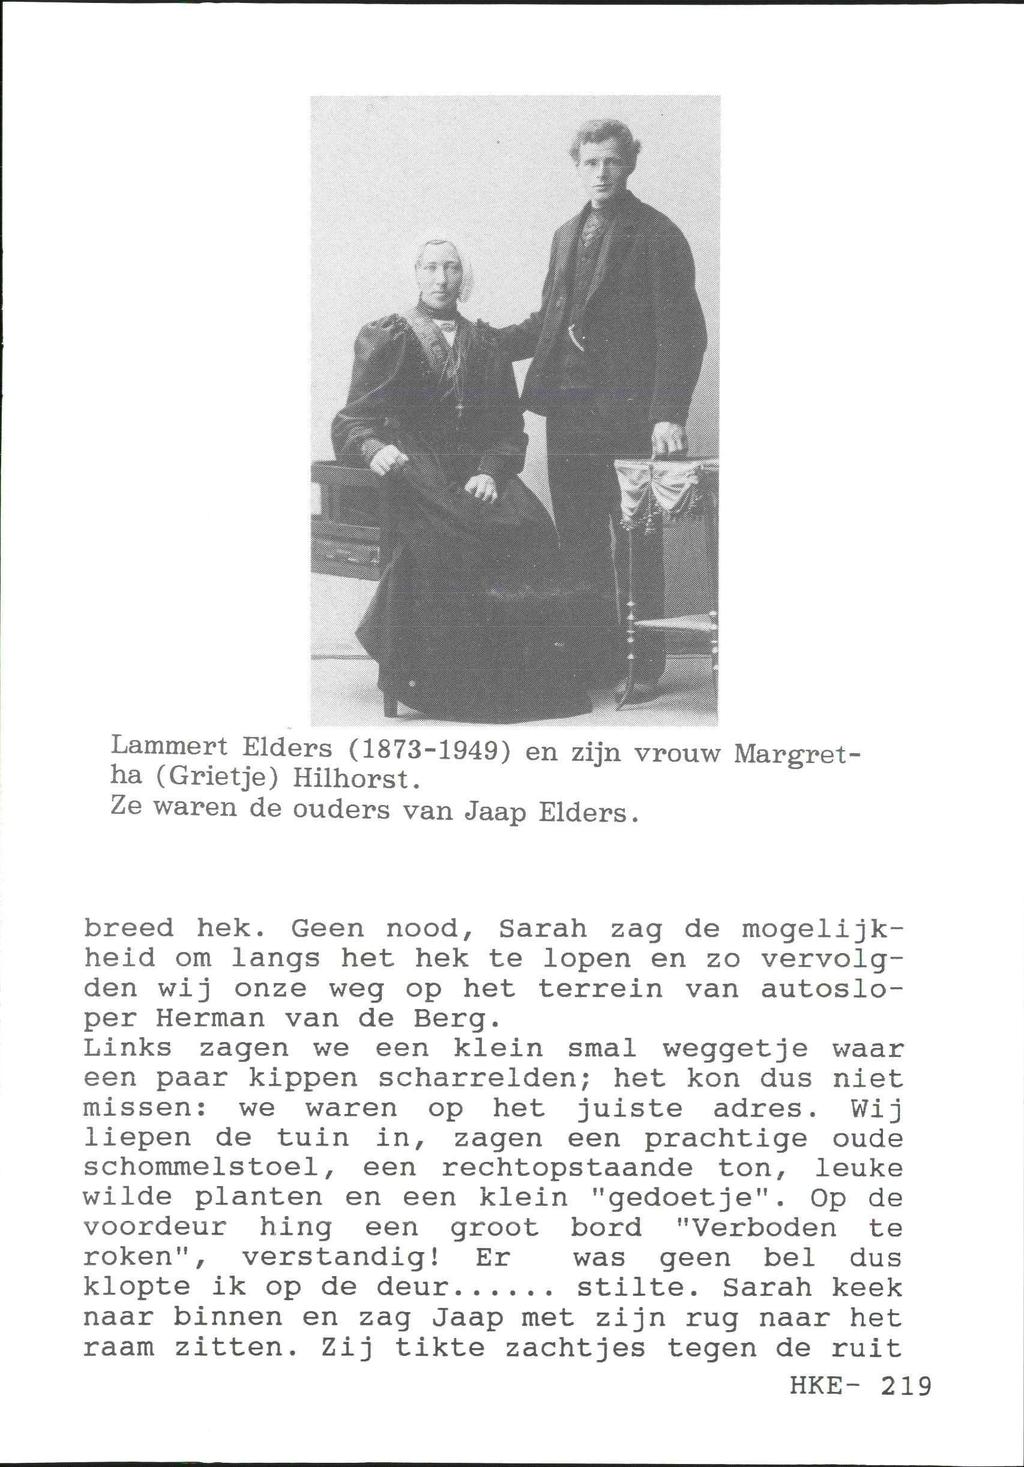 Lammert Elders (1873-1949) en zijn vrouw Margretha (Grietje) Hilhorst. Ze waren de ouders van Jaap Elders. breed hek.